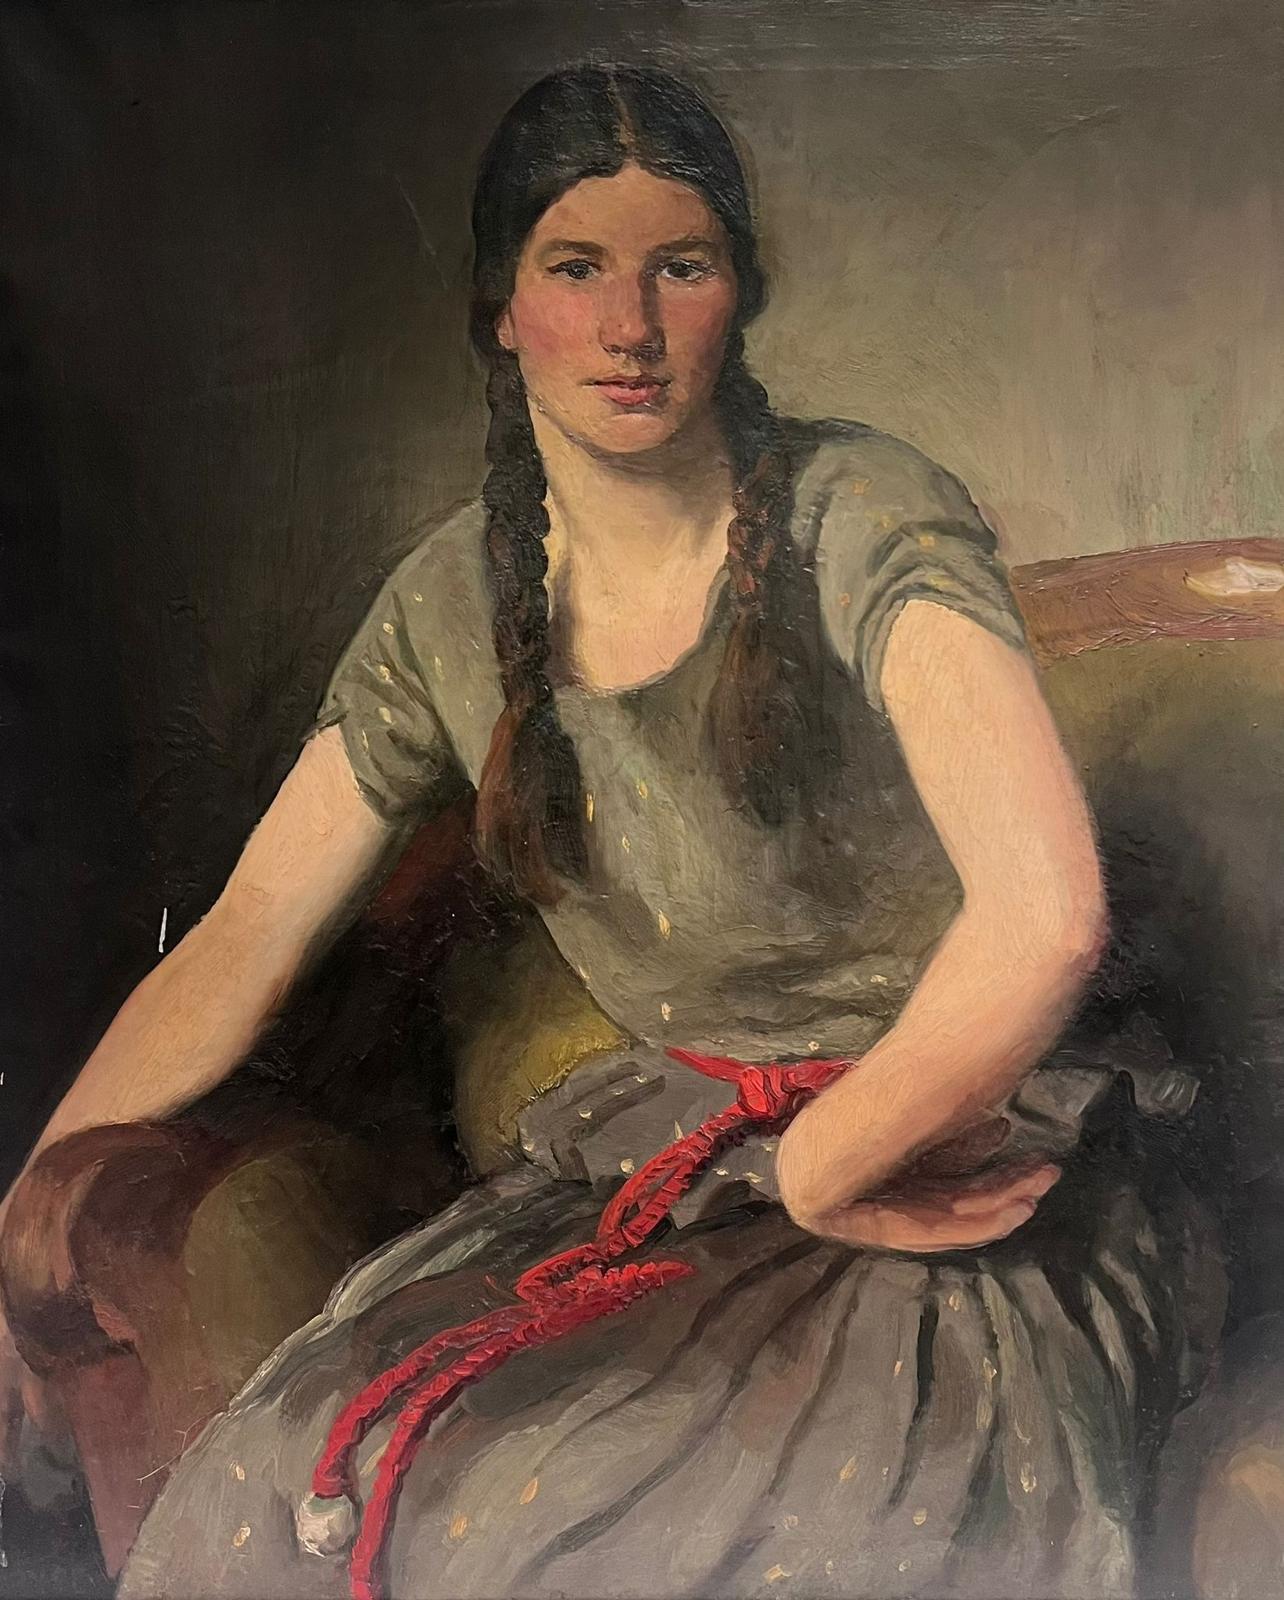 Grand portrait européen ancien d'une jeune fille avec des peignes dans les cheveux huile sur toile